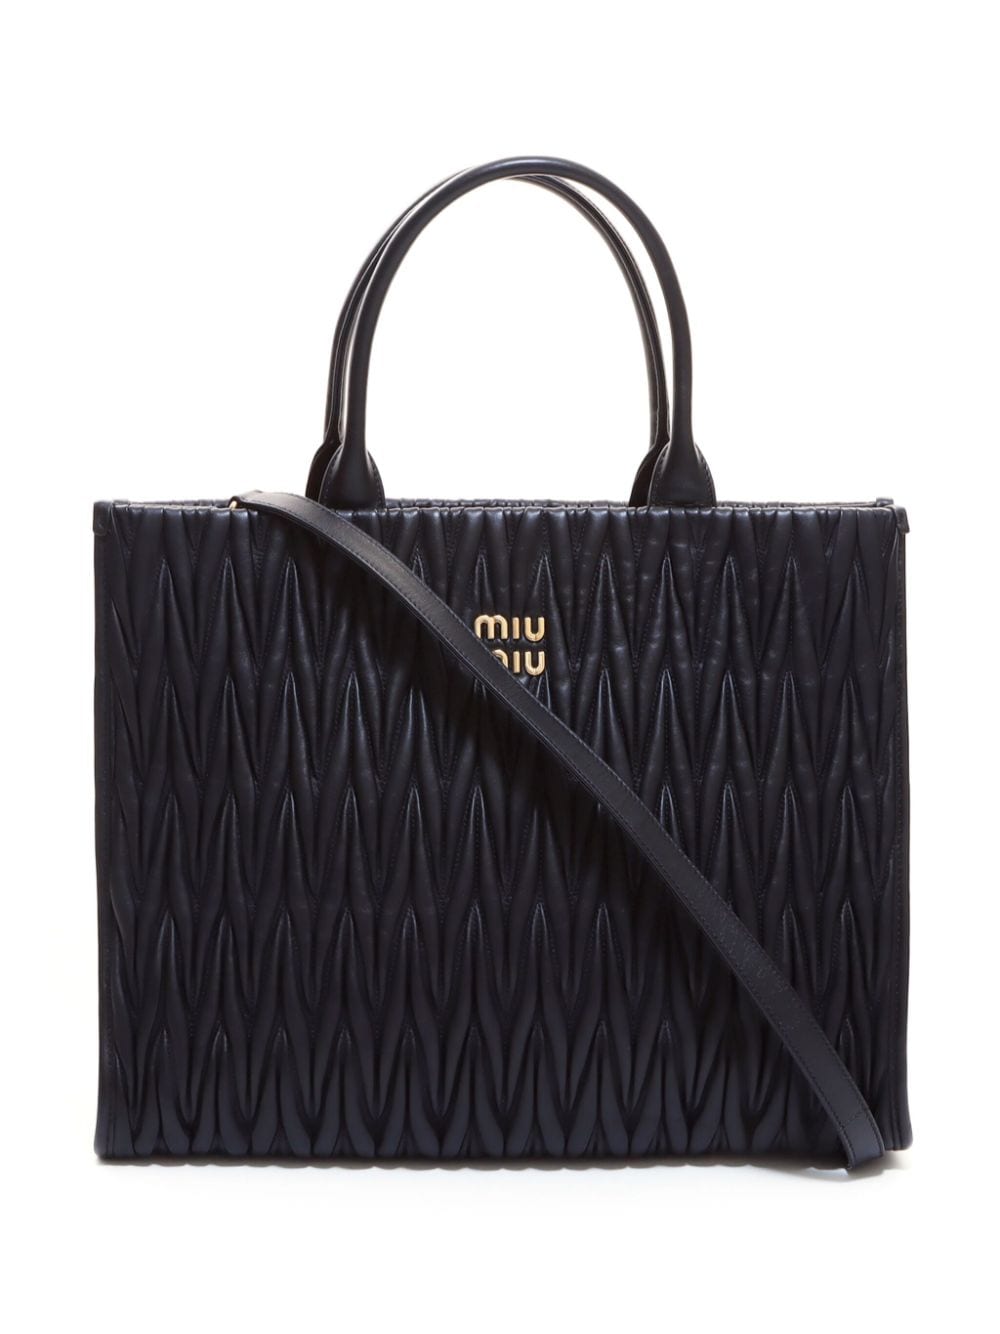 Miu Miu Pre-Owned matelasse two-way handbag - Nero